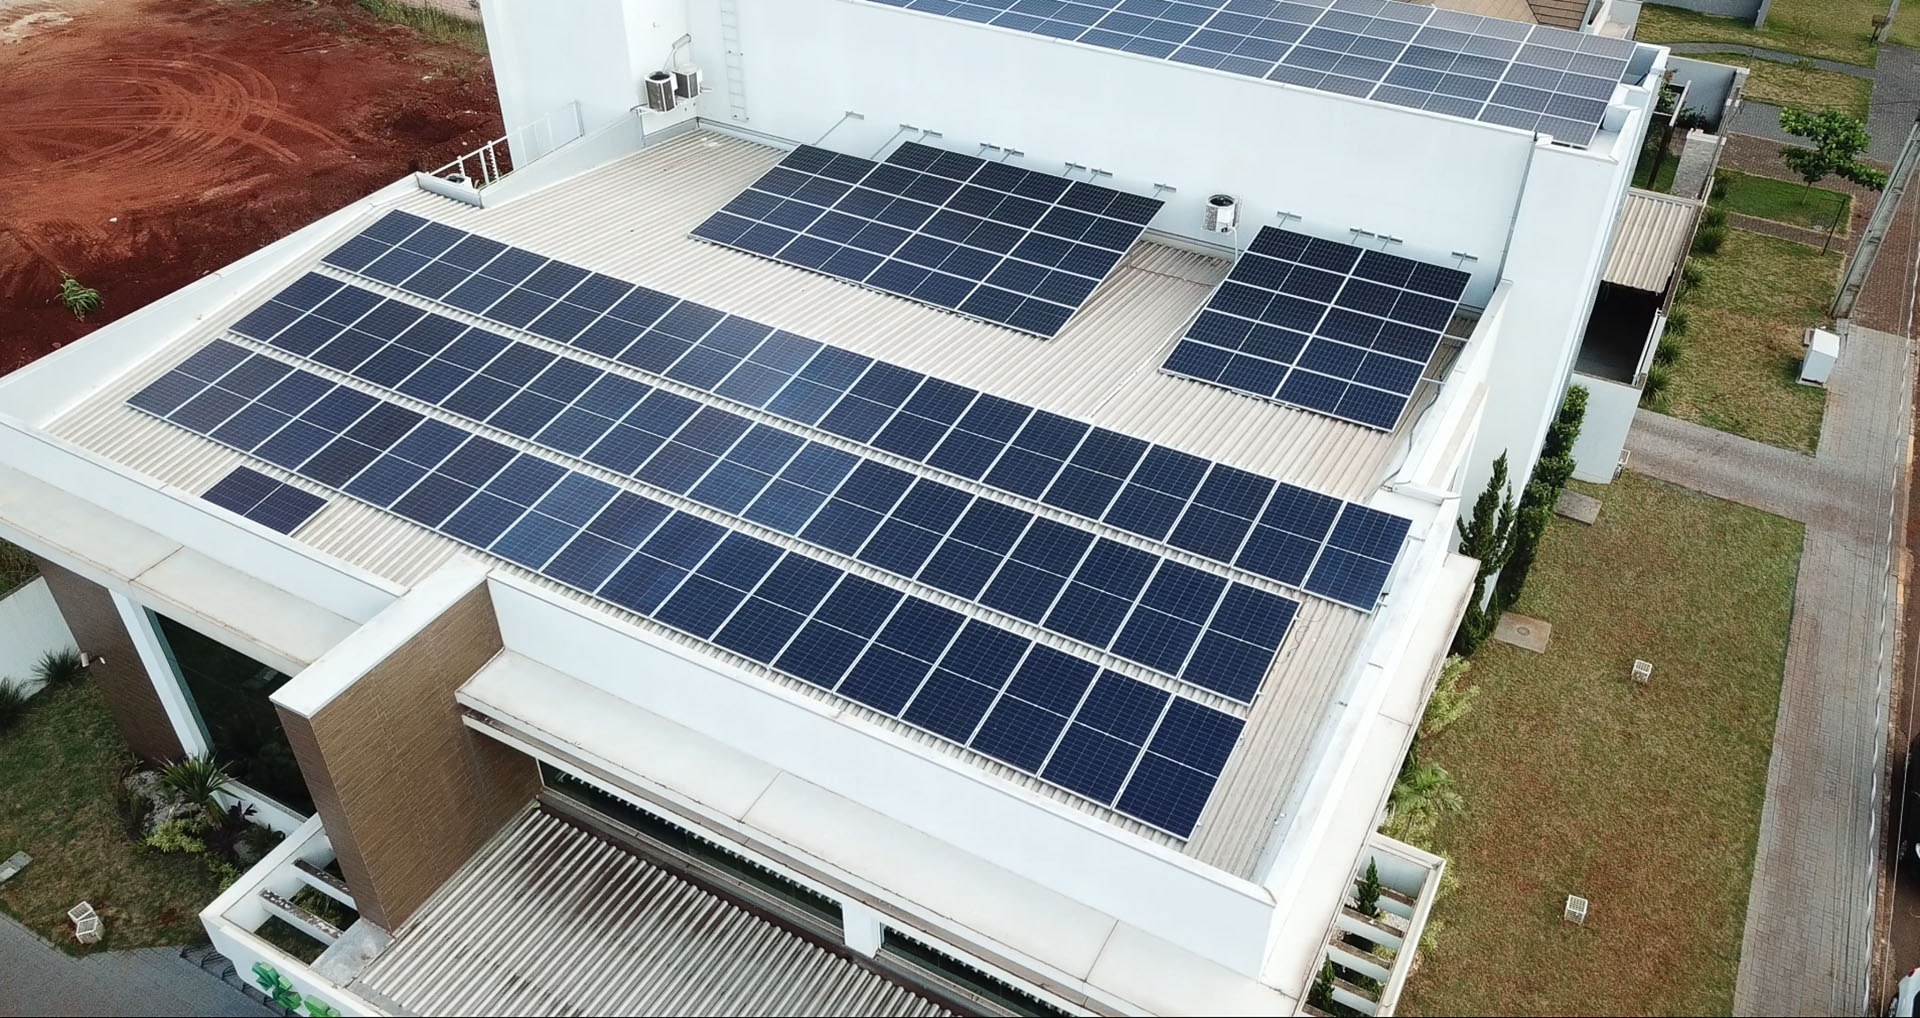 Geração de energia solar contribui com o desenvolvimento de construções sustentáveis